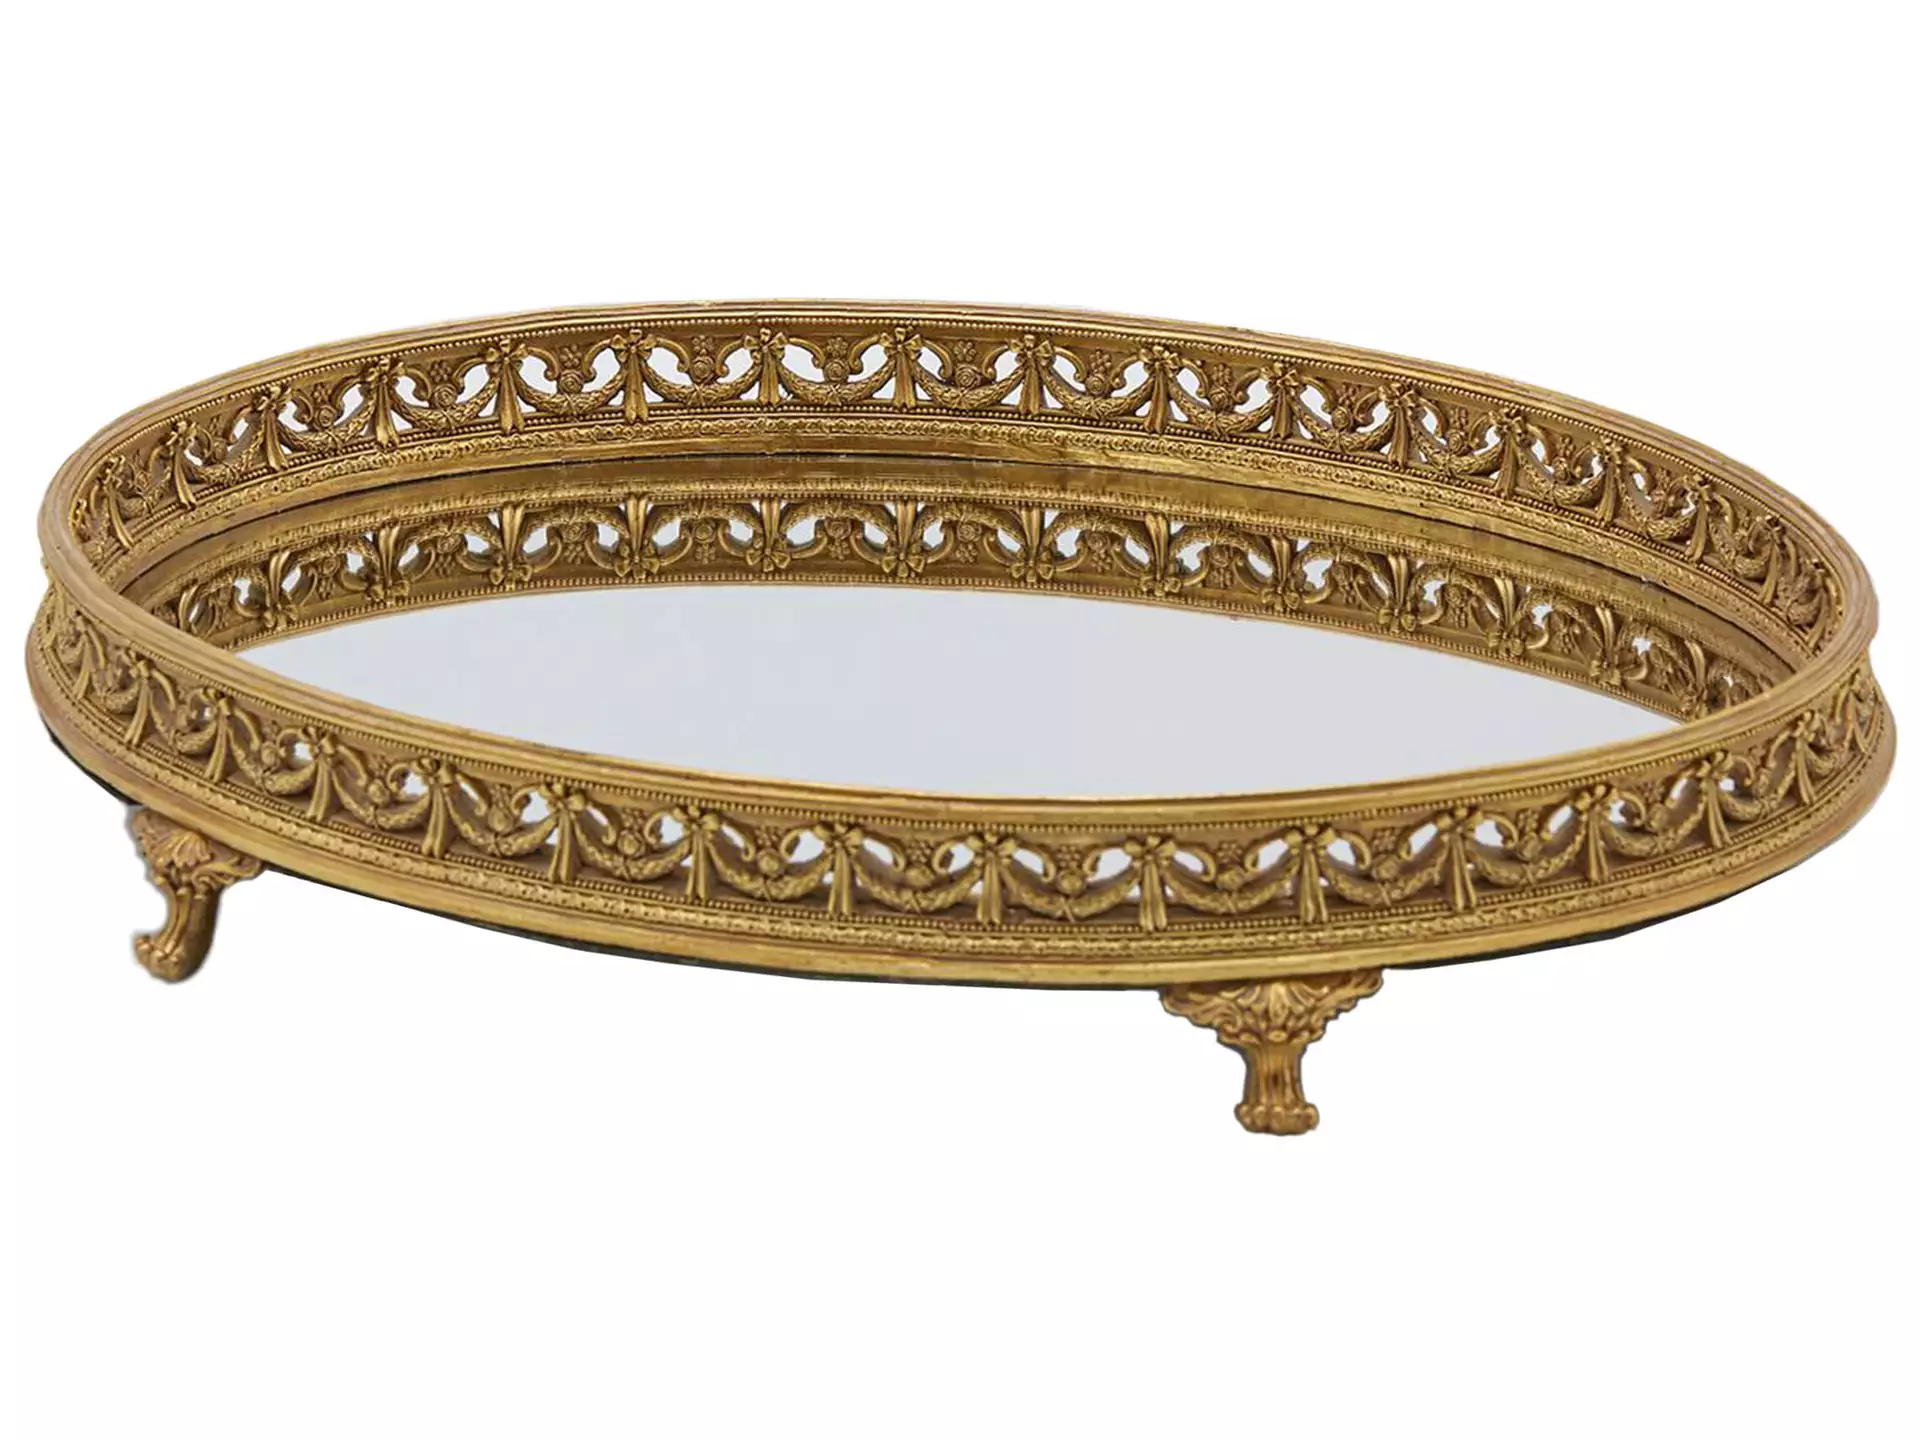 Tablett Oval Gold mit Spiegel H: 8 cm Edg